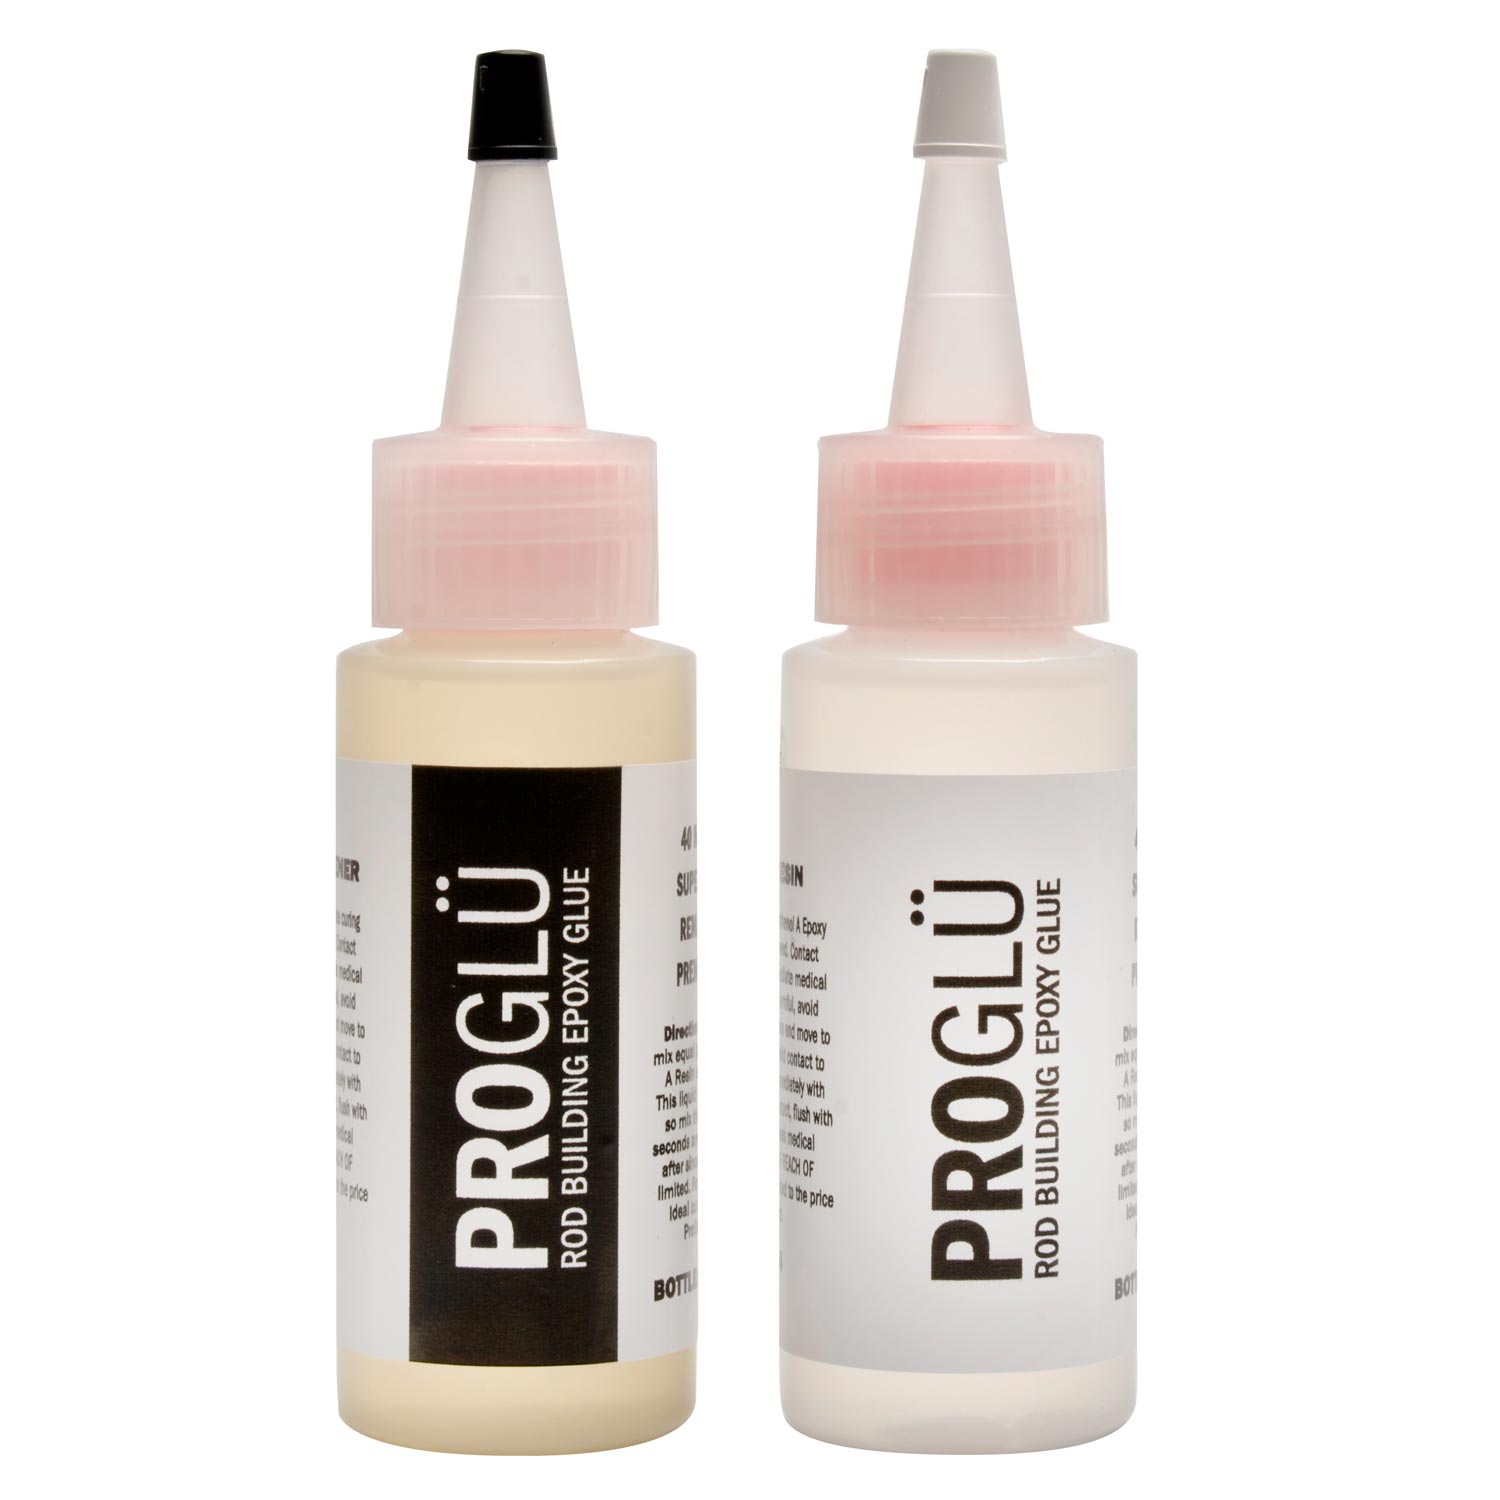 ProGlu Premium Rod Building Epoxy Glue 4 oz